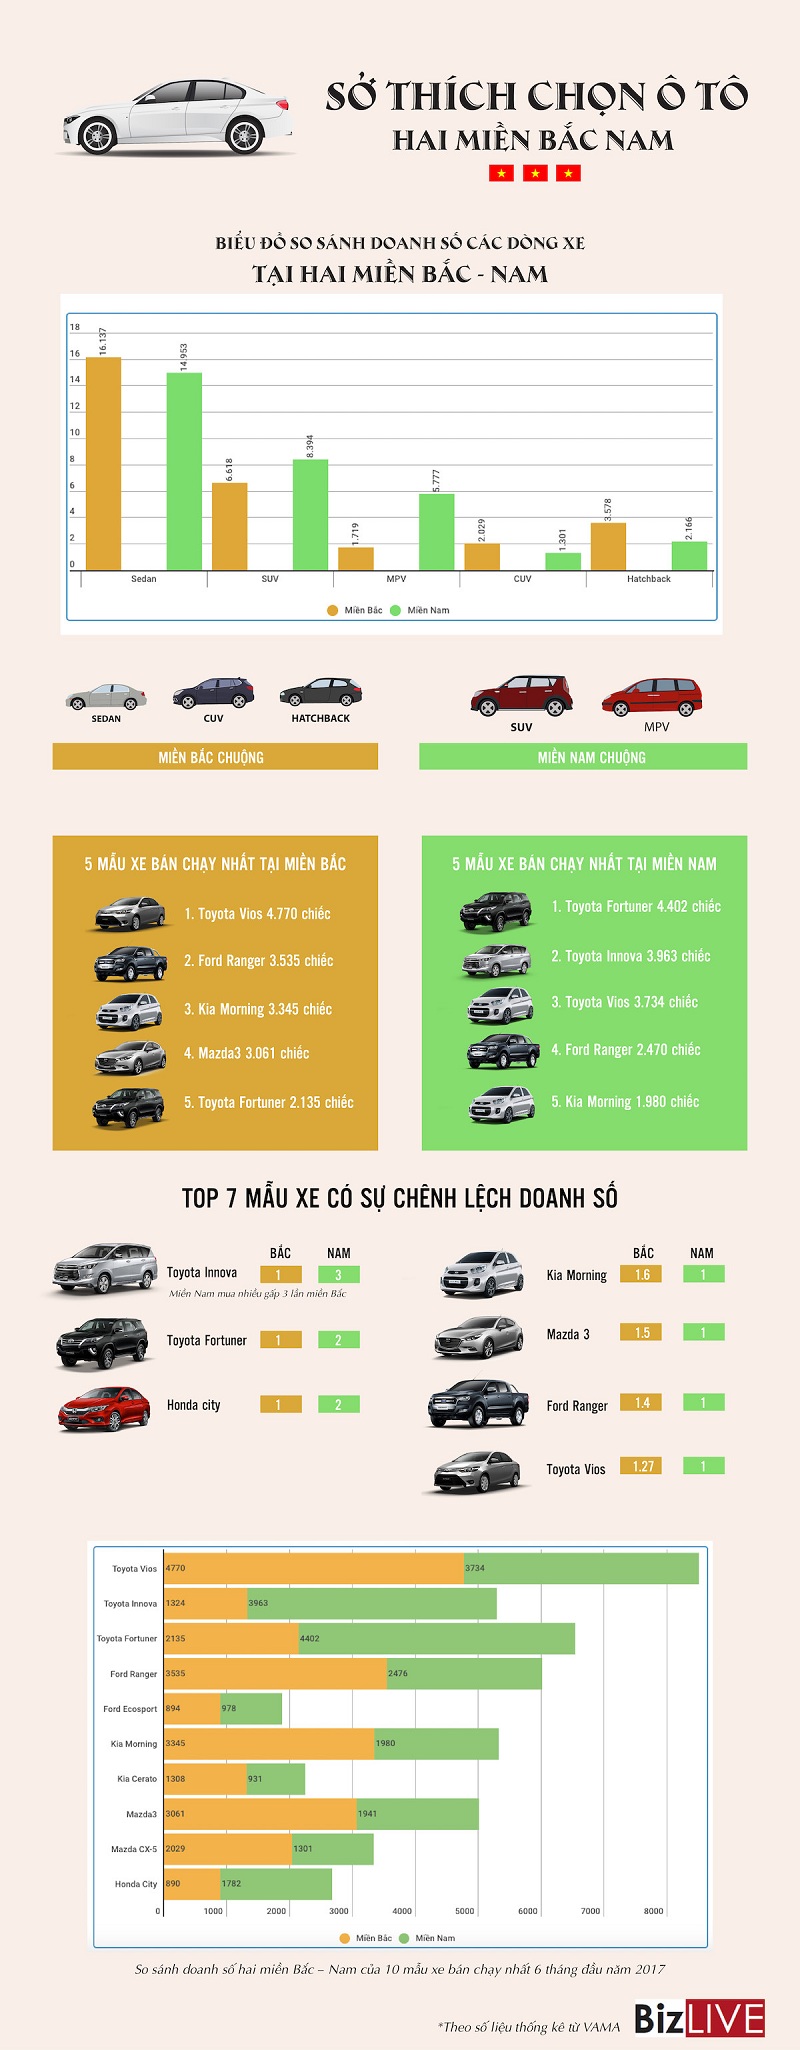 [Infographic] Sở thích chọn ô tô hai miền Nam Bắc có gì khác nhau?